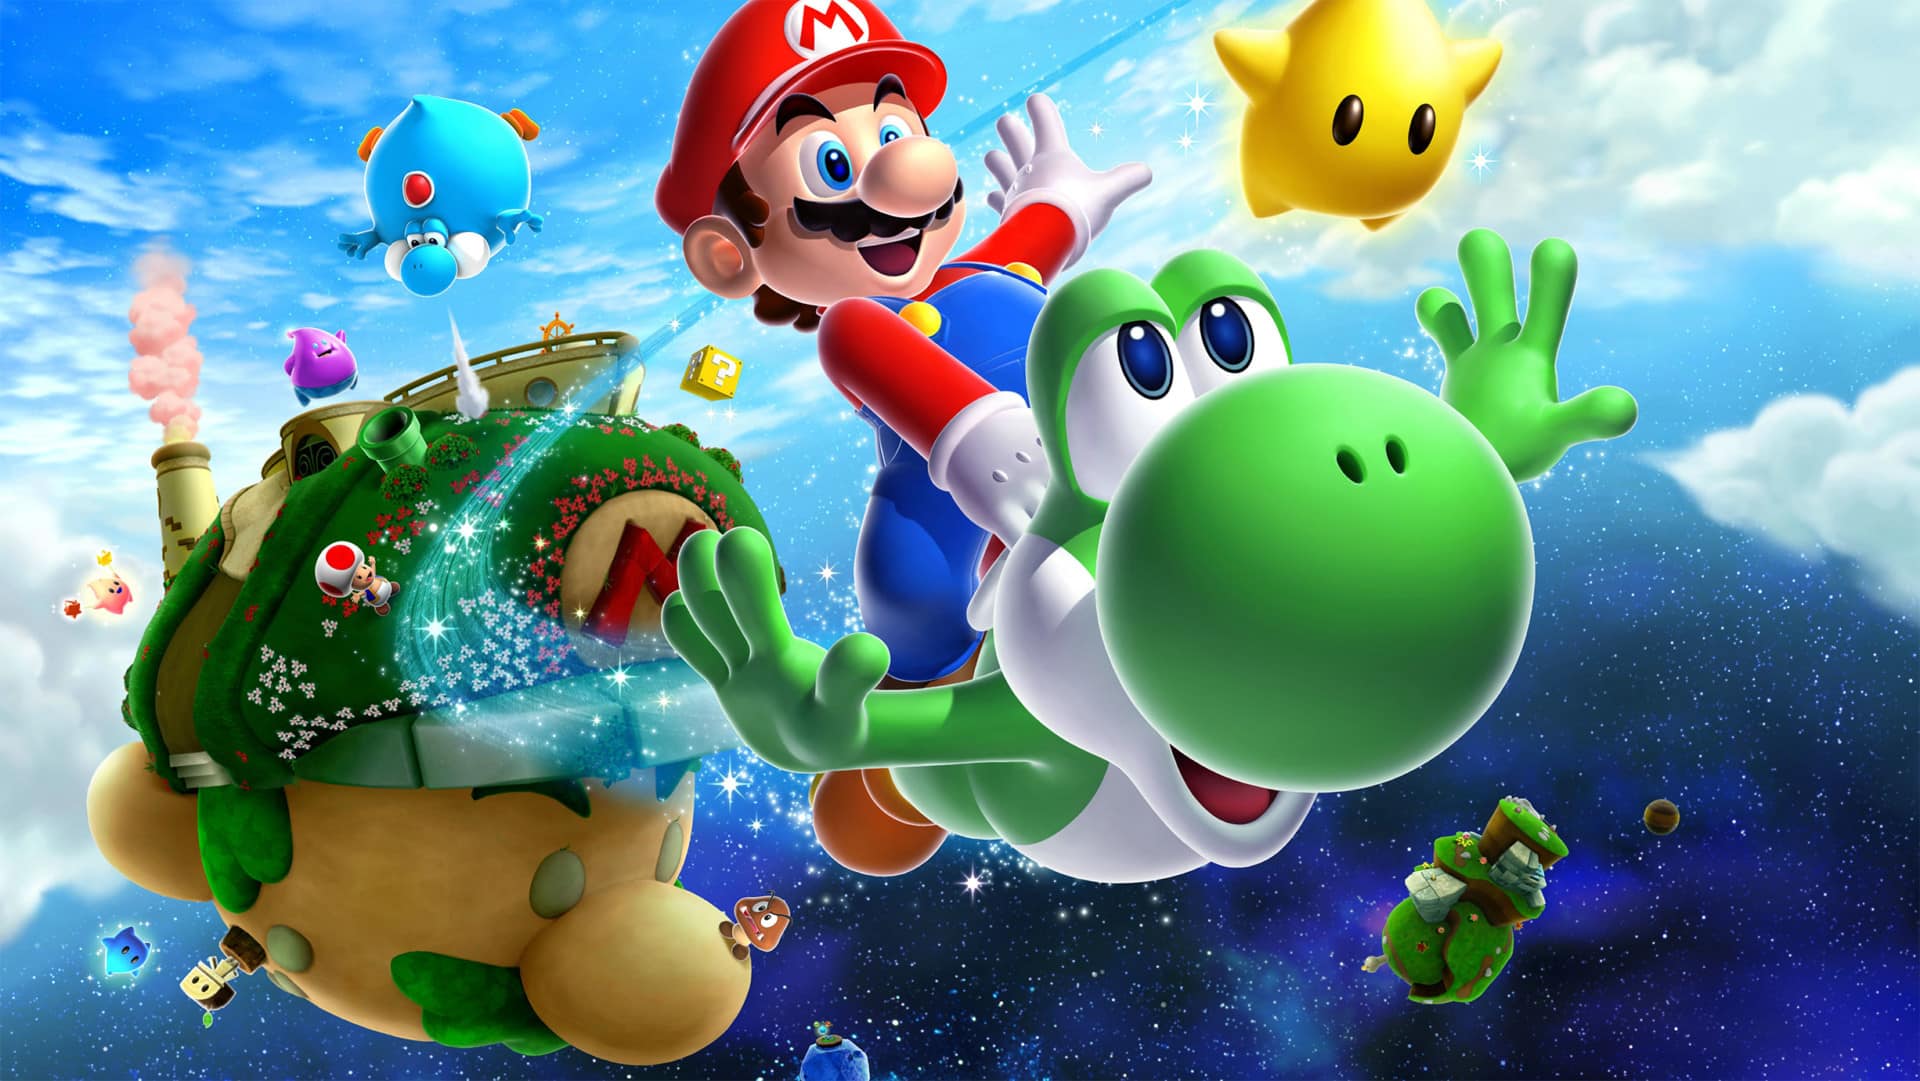 Super Mario Galaxy Super Mario Bros. 35th anniversary Nintendo remasters